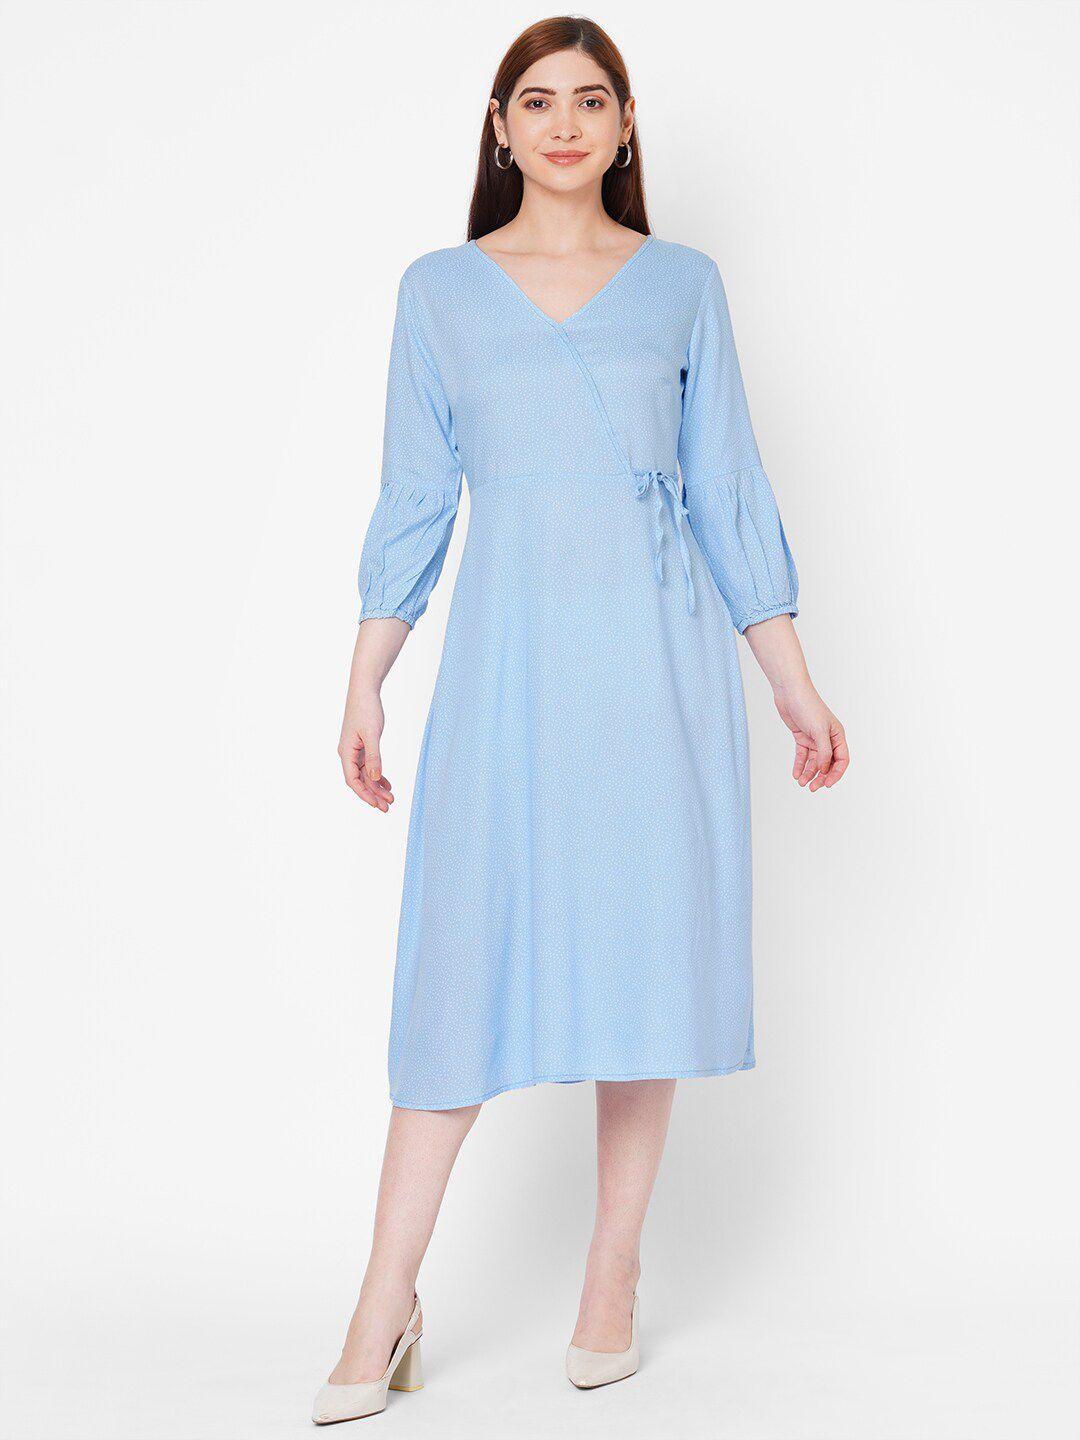 109f blue & white midi dress